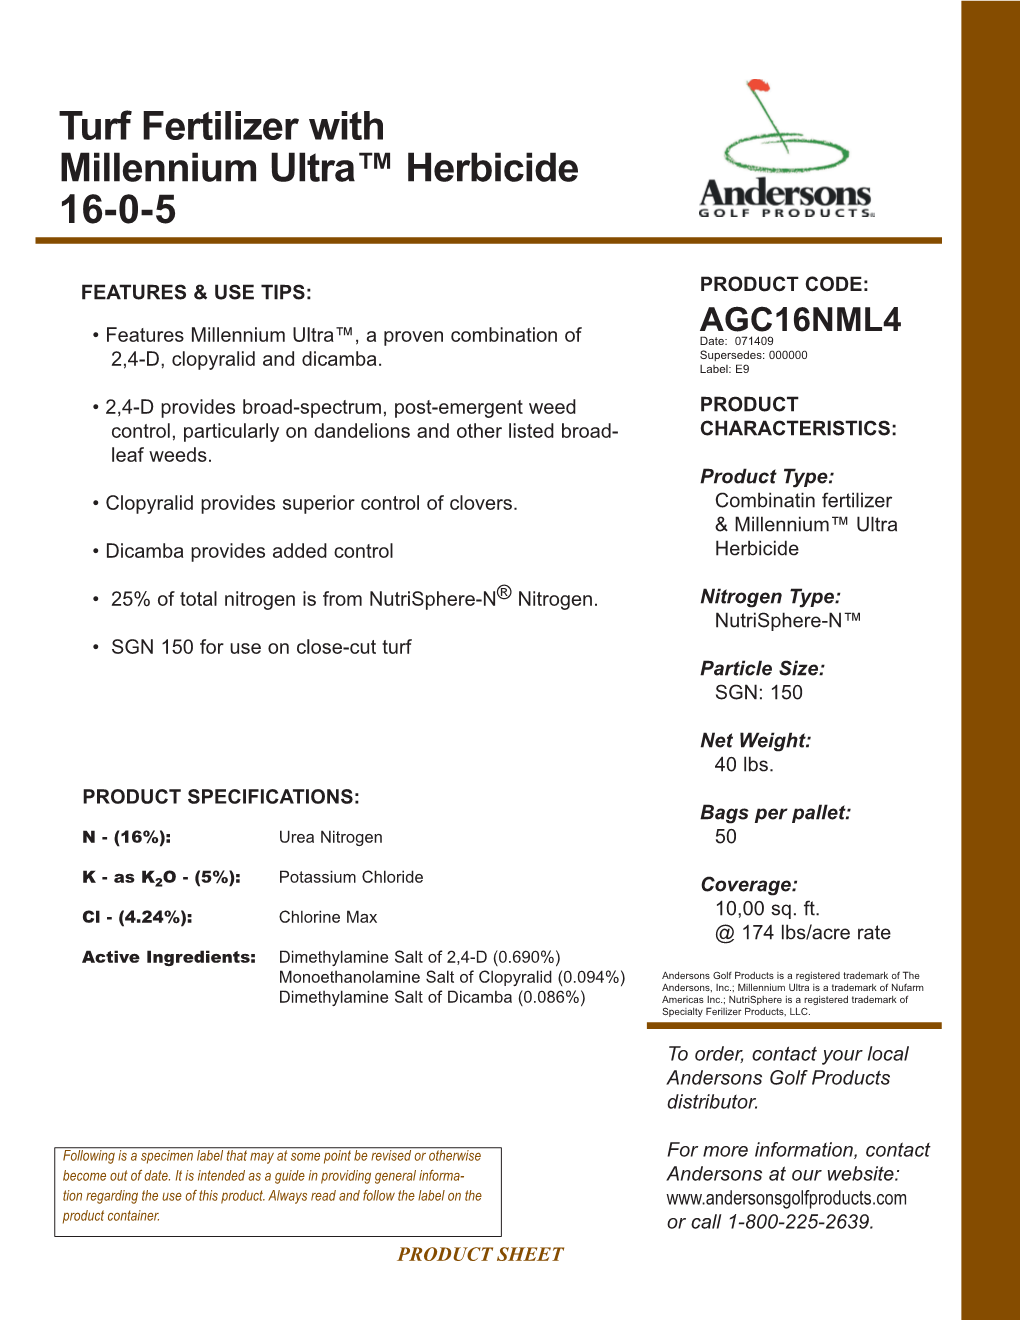 Turf Fertilizer with Millennium Ultra™ Herbicide 16-0-5